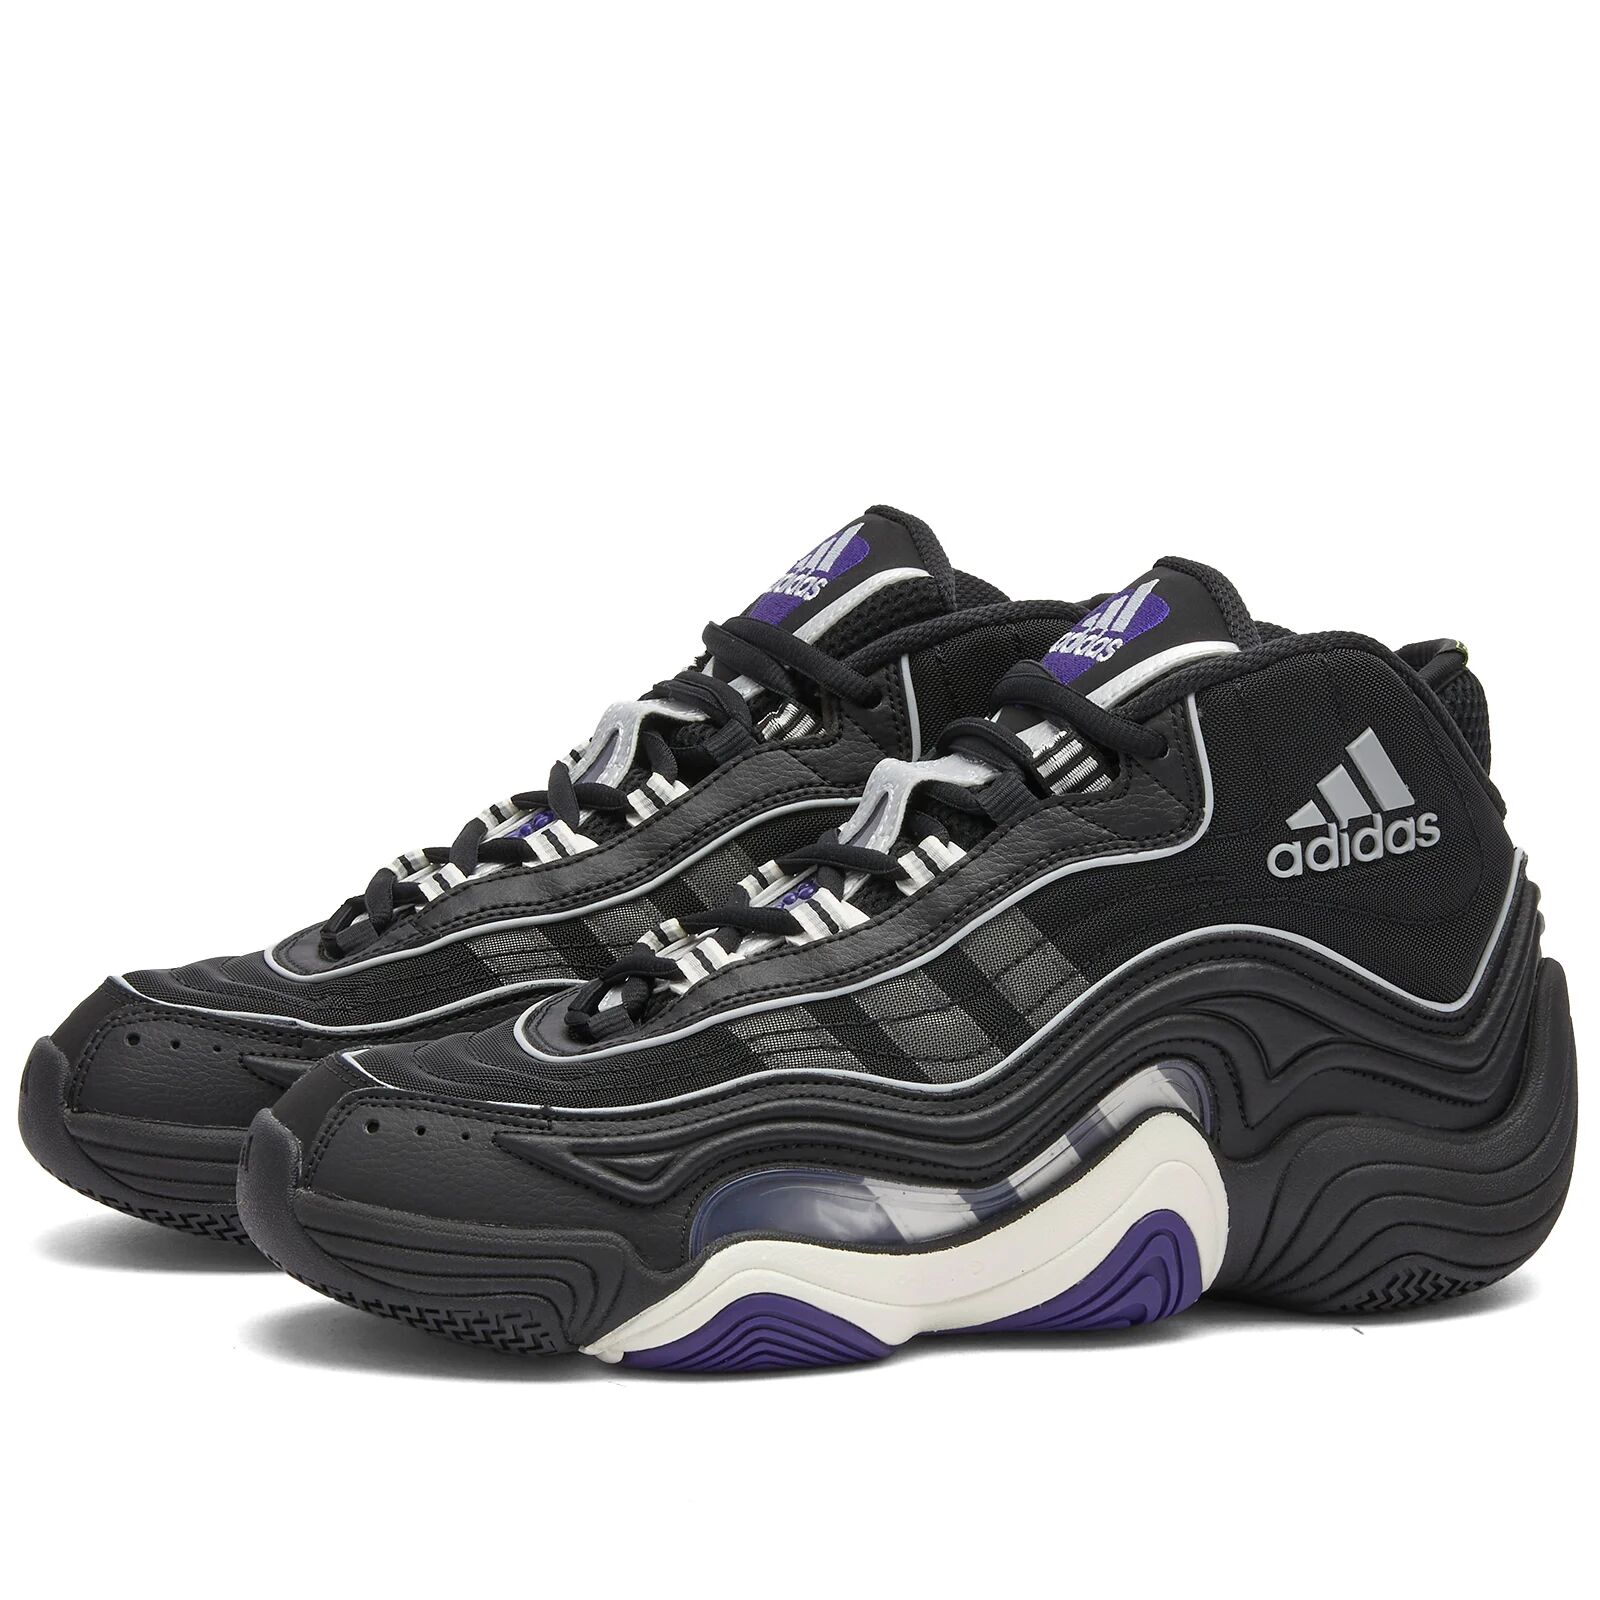 Adidas Men's CRAZY 98 Sneakers in Core Black/Core White/Collegiate Purple, Size UK 8.5